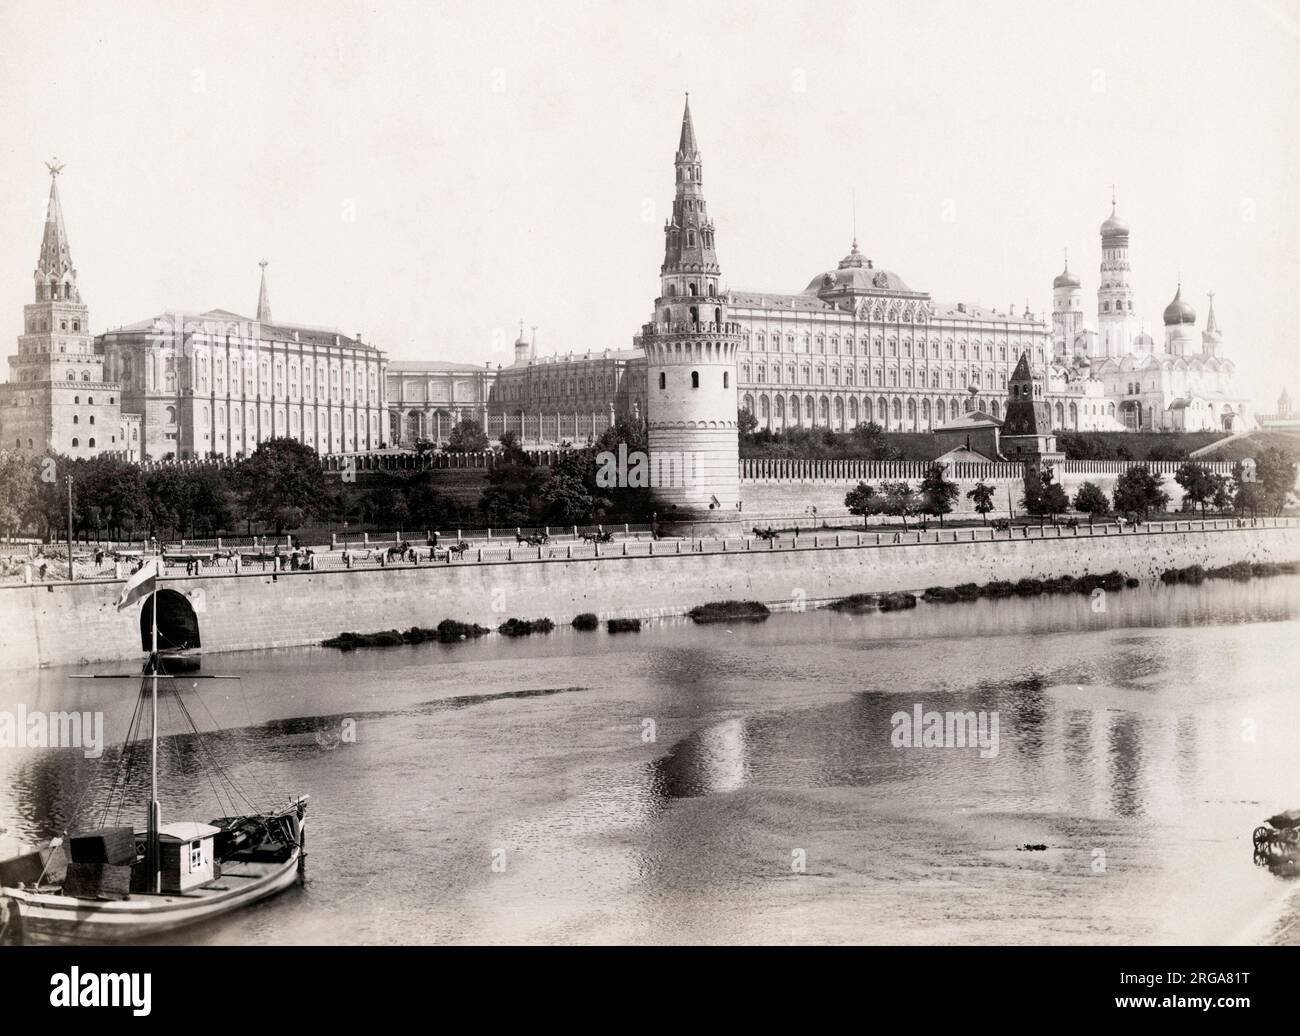 Blick auf den Kreml auf der anderen Flussseite, Moskau Russland. Vintage 19. Jahrhundert Foto. Stockfoto